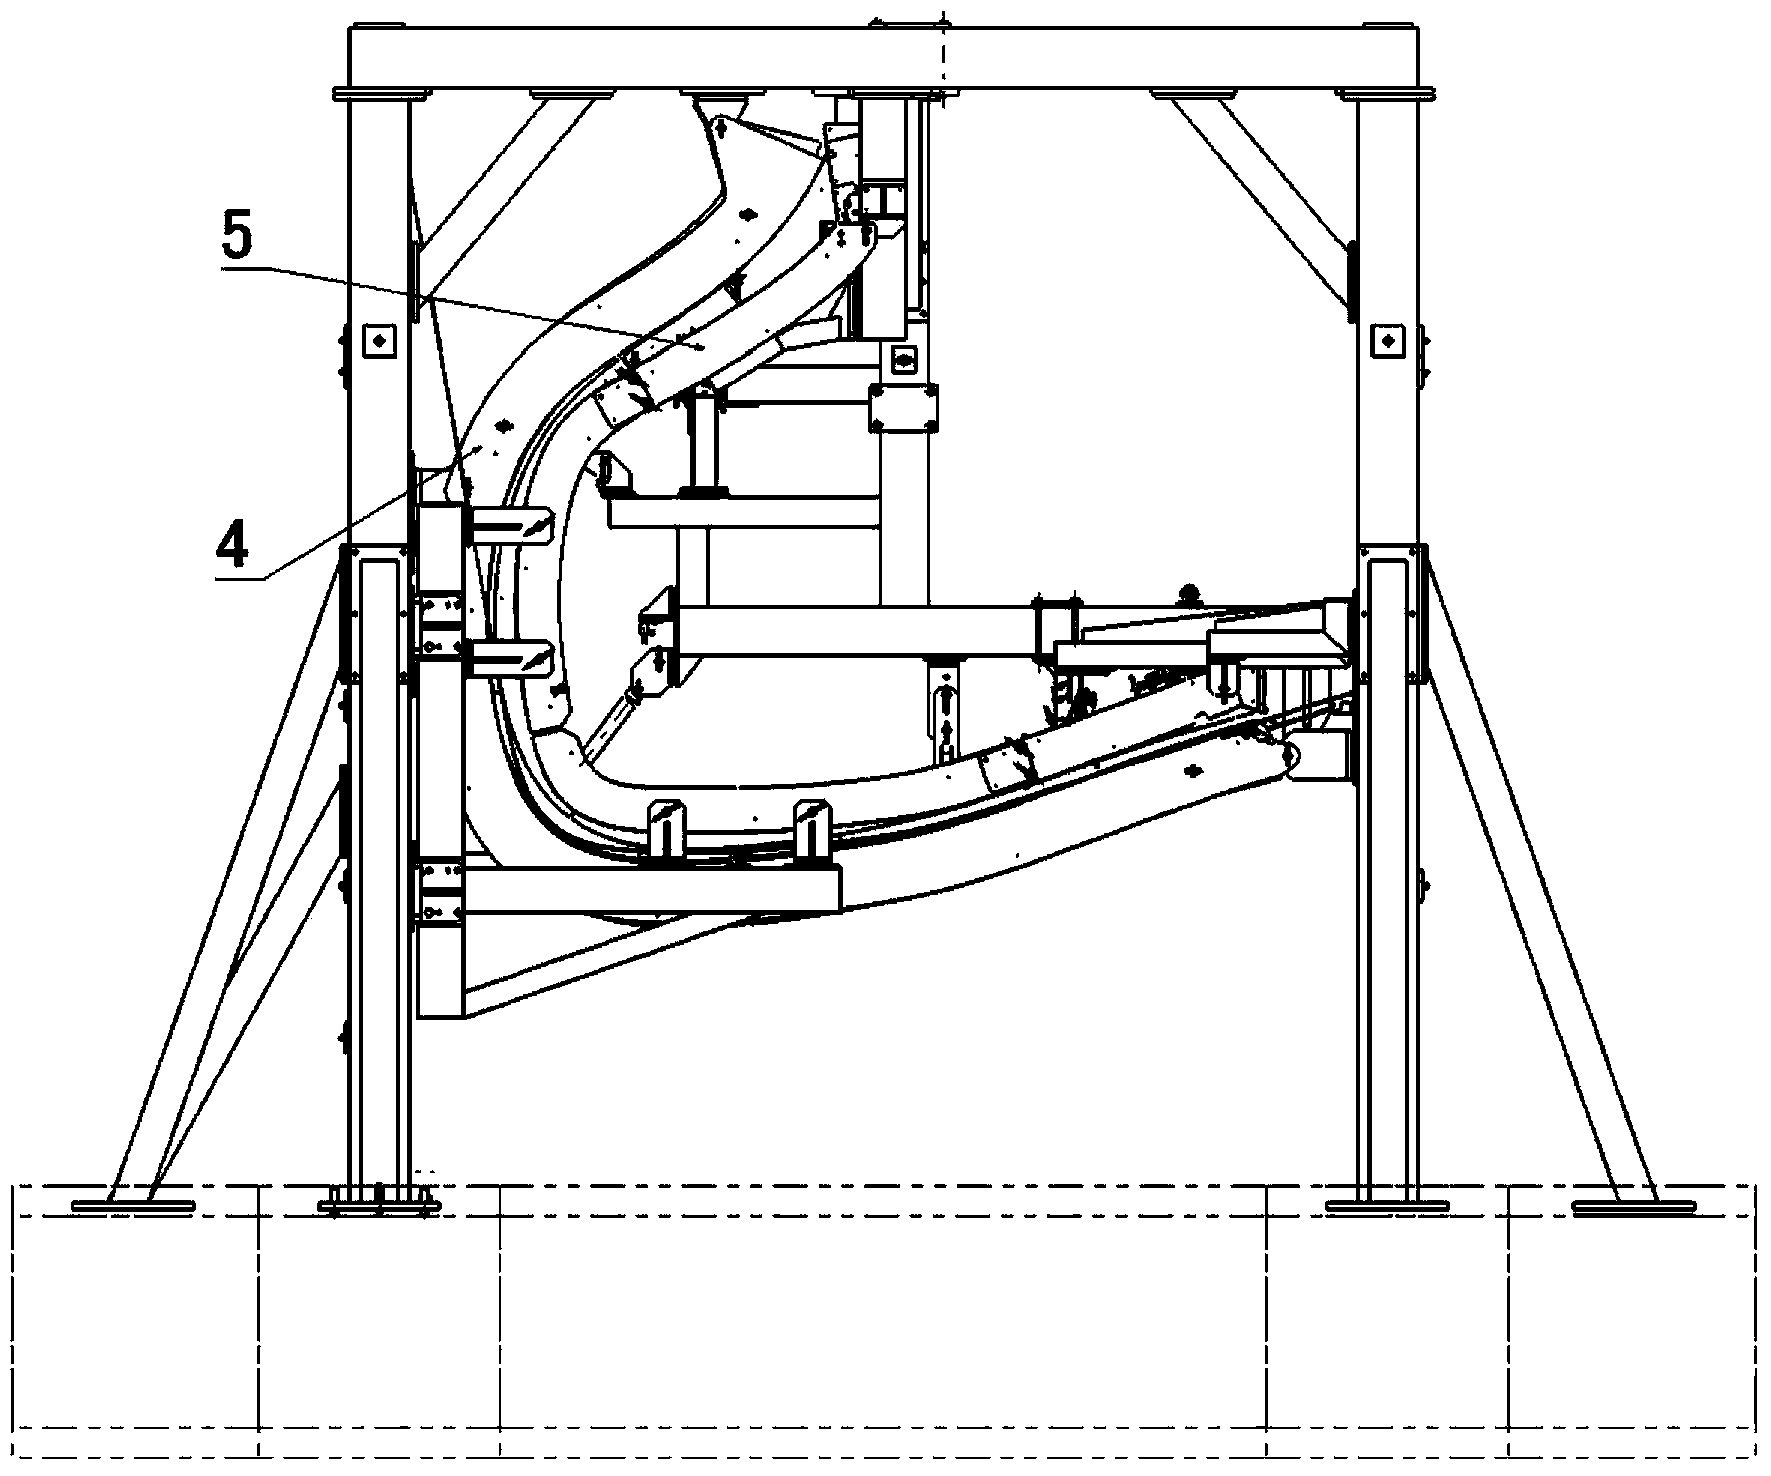 Aircraft main landing gear hatch door assembling coordinate platform